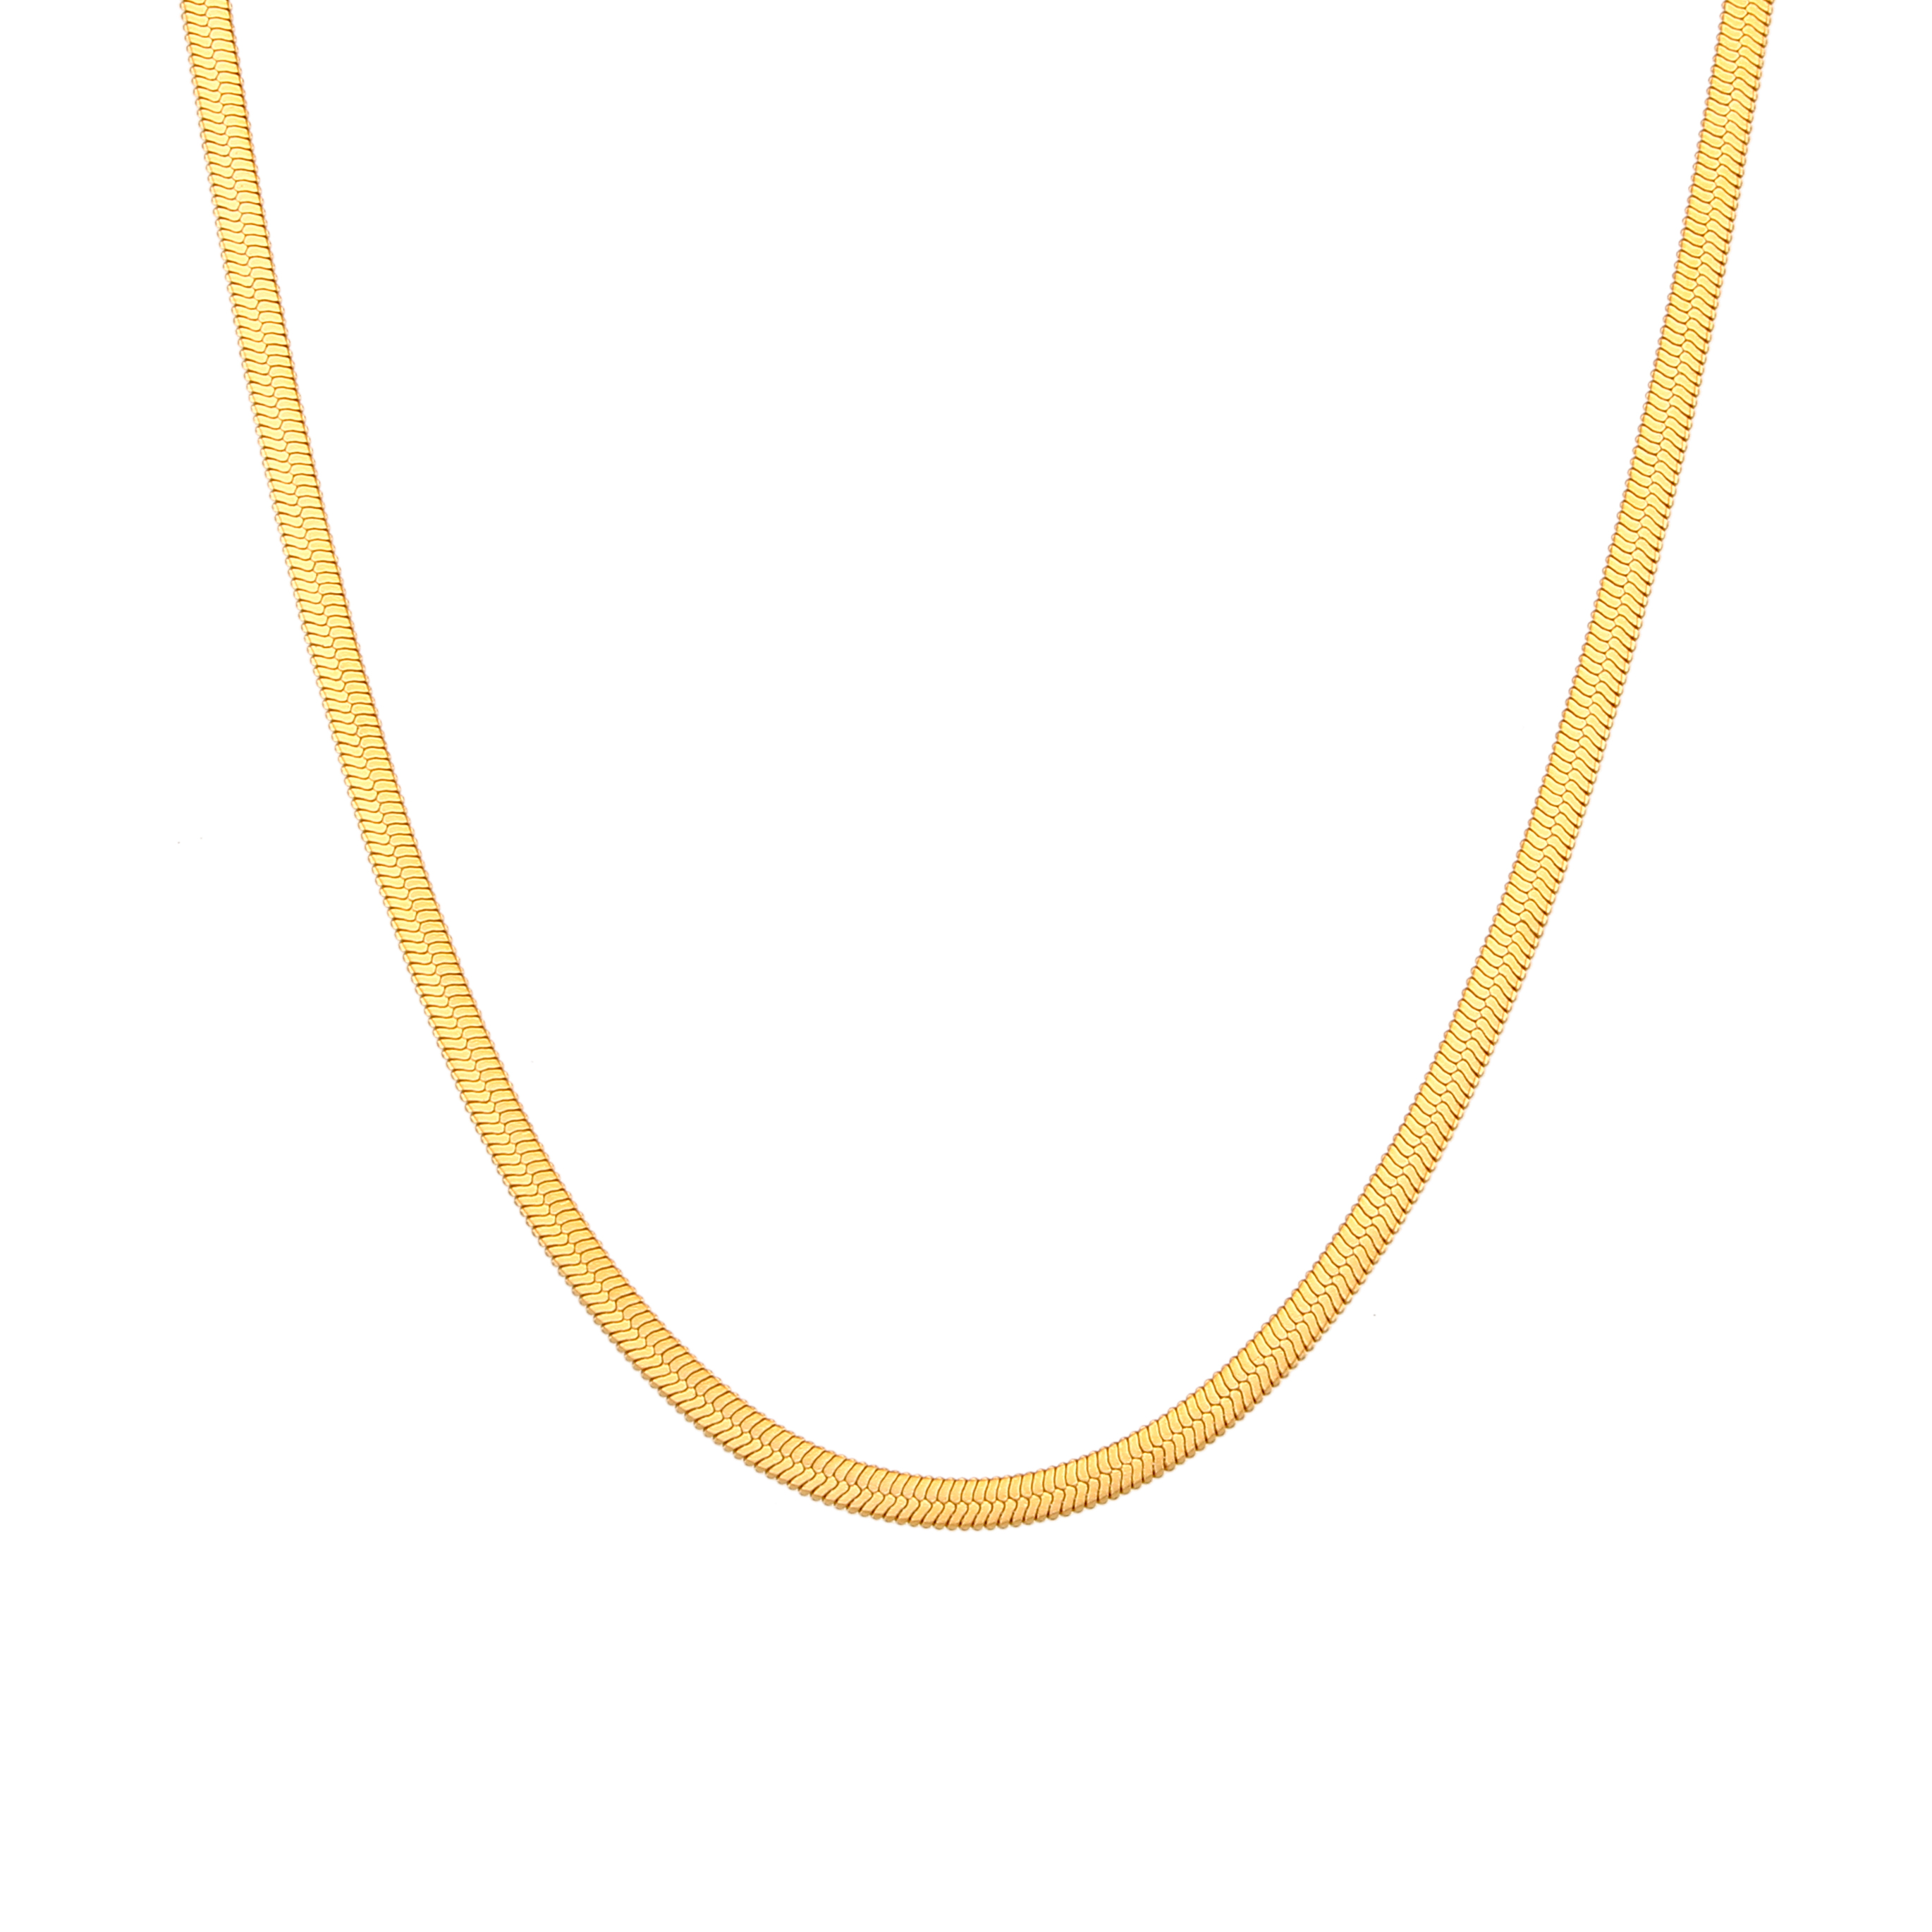 Collar Acero Liso Collar Acero - 3 mm Herryingbone - 32+6 cm, 38+4 cm, 42 cm y 48 cm - Color Oro